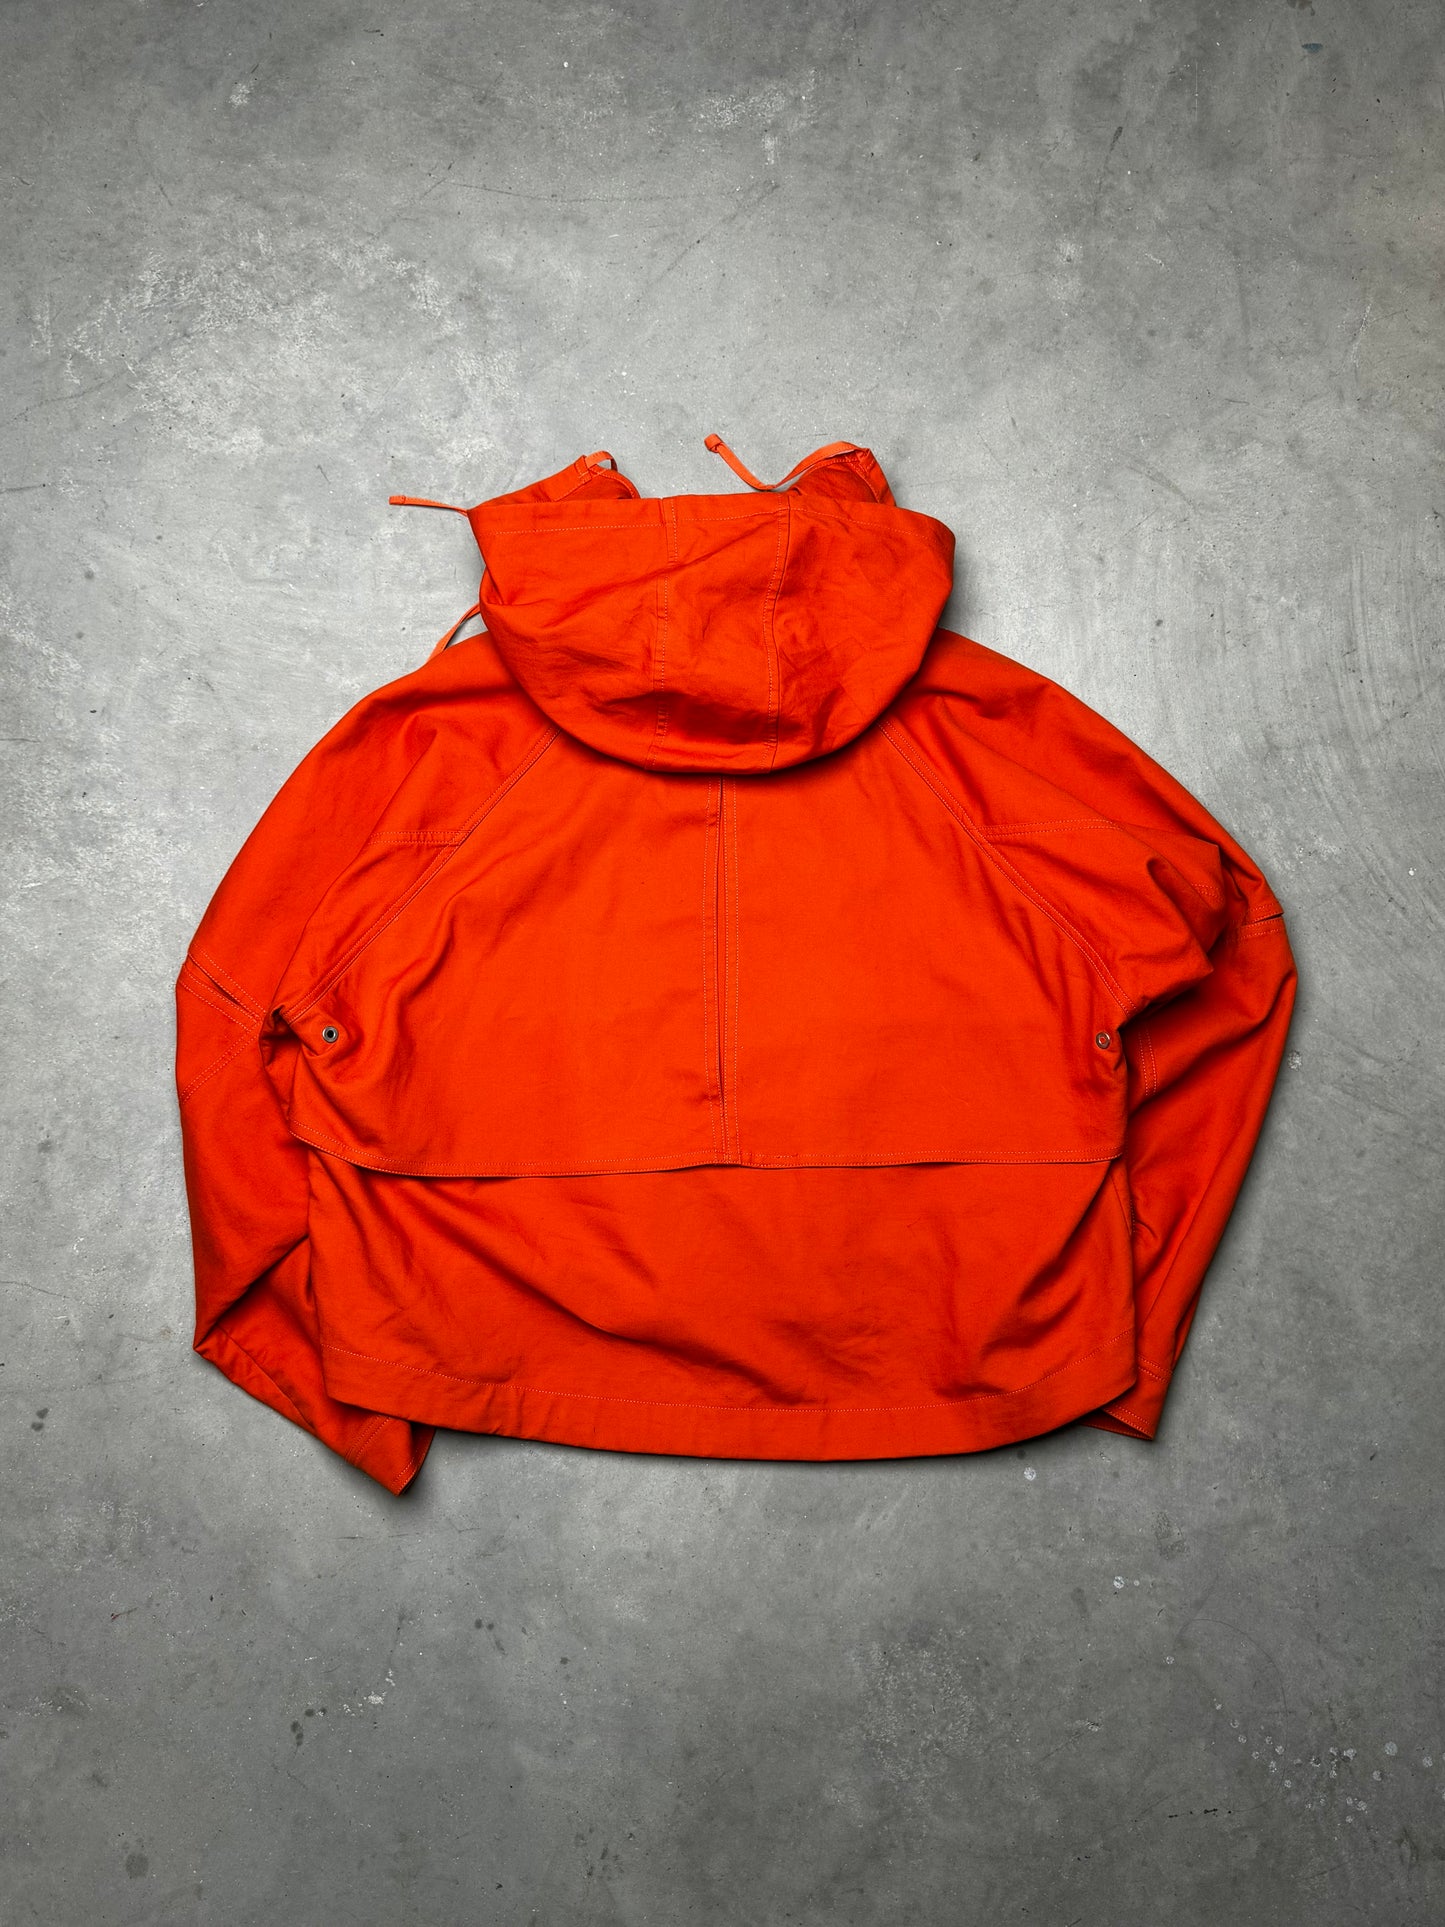 AMBUSH Matchesfashion Exclusive Canvas Jacket Orange